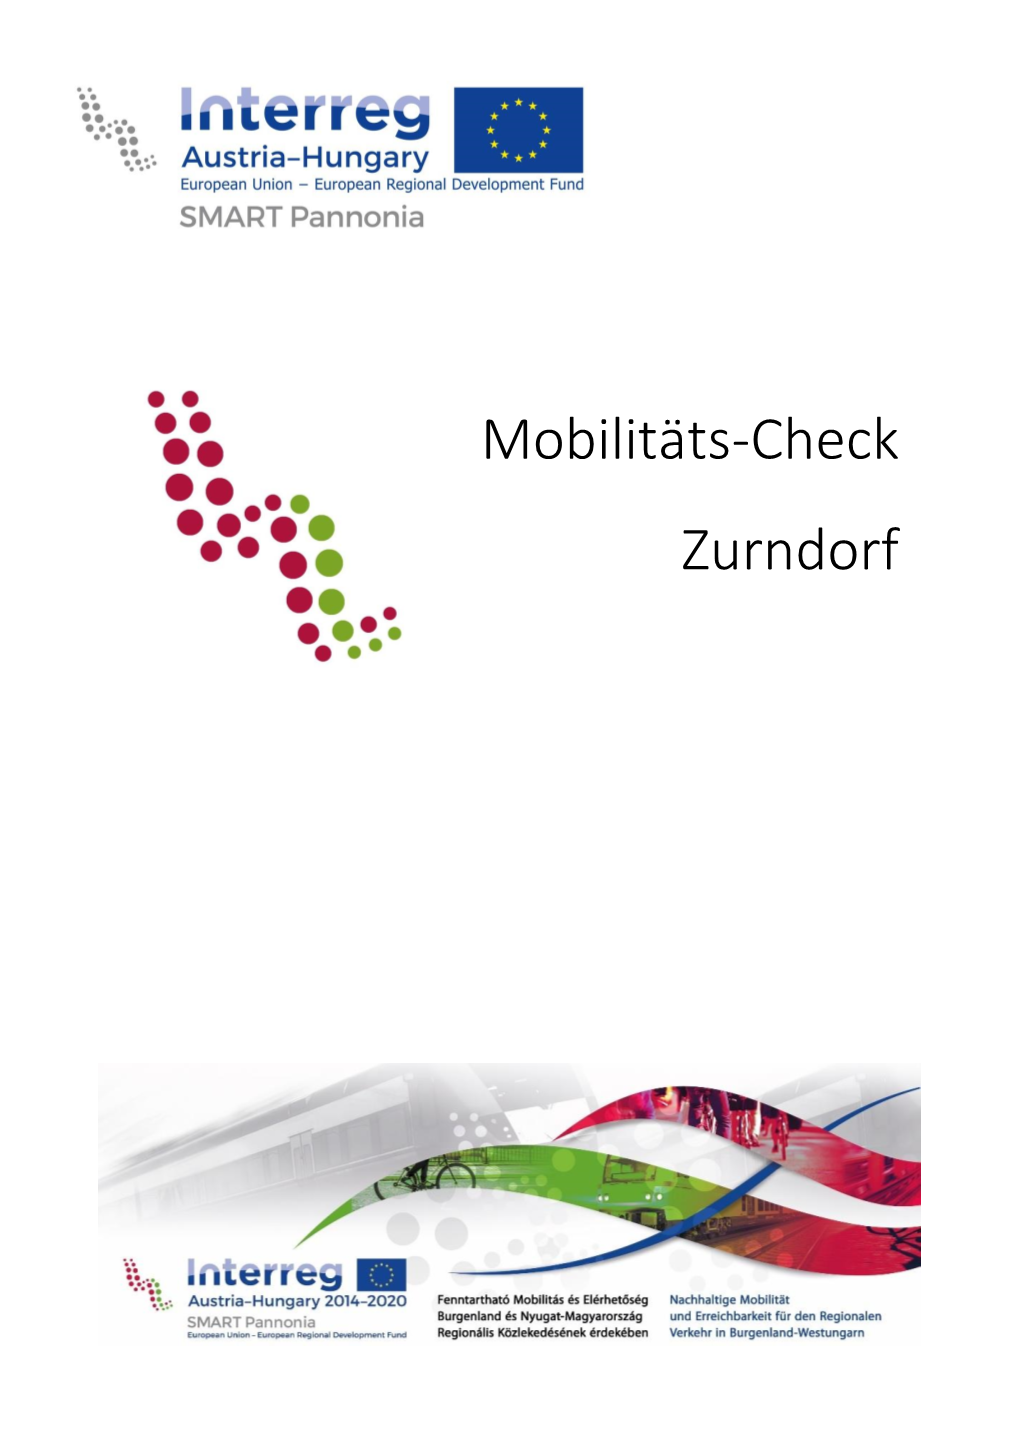 Mobilitäts-Check Zurndorf